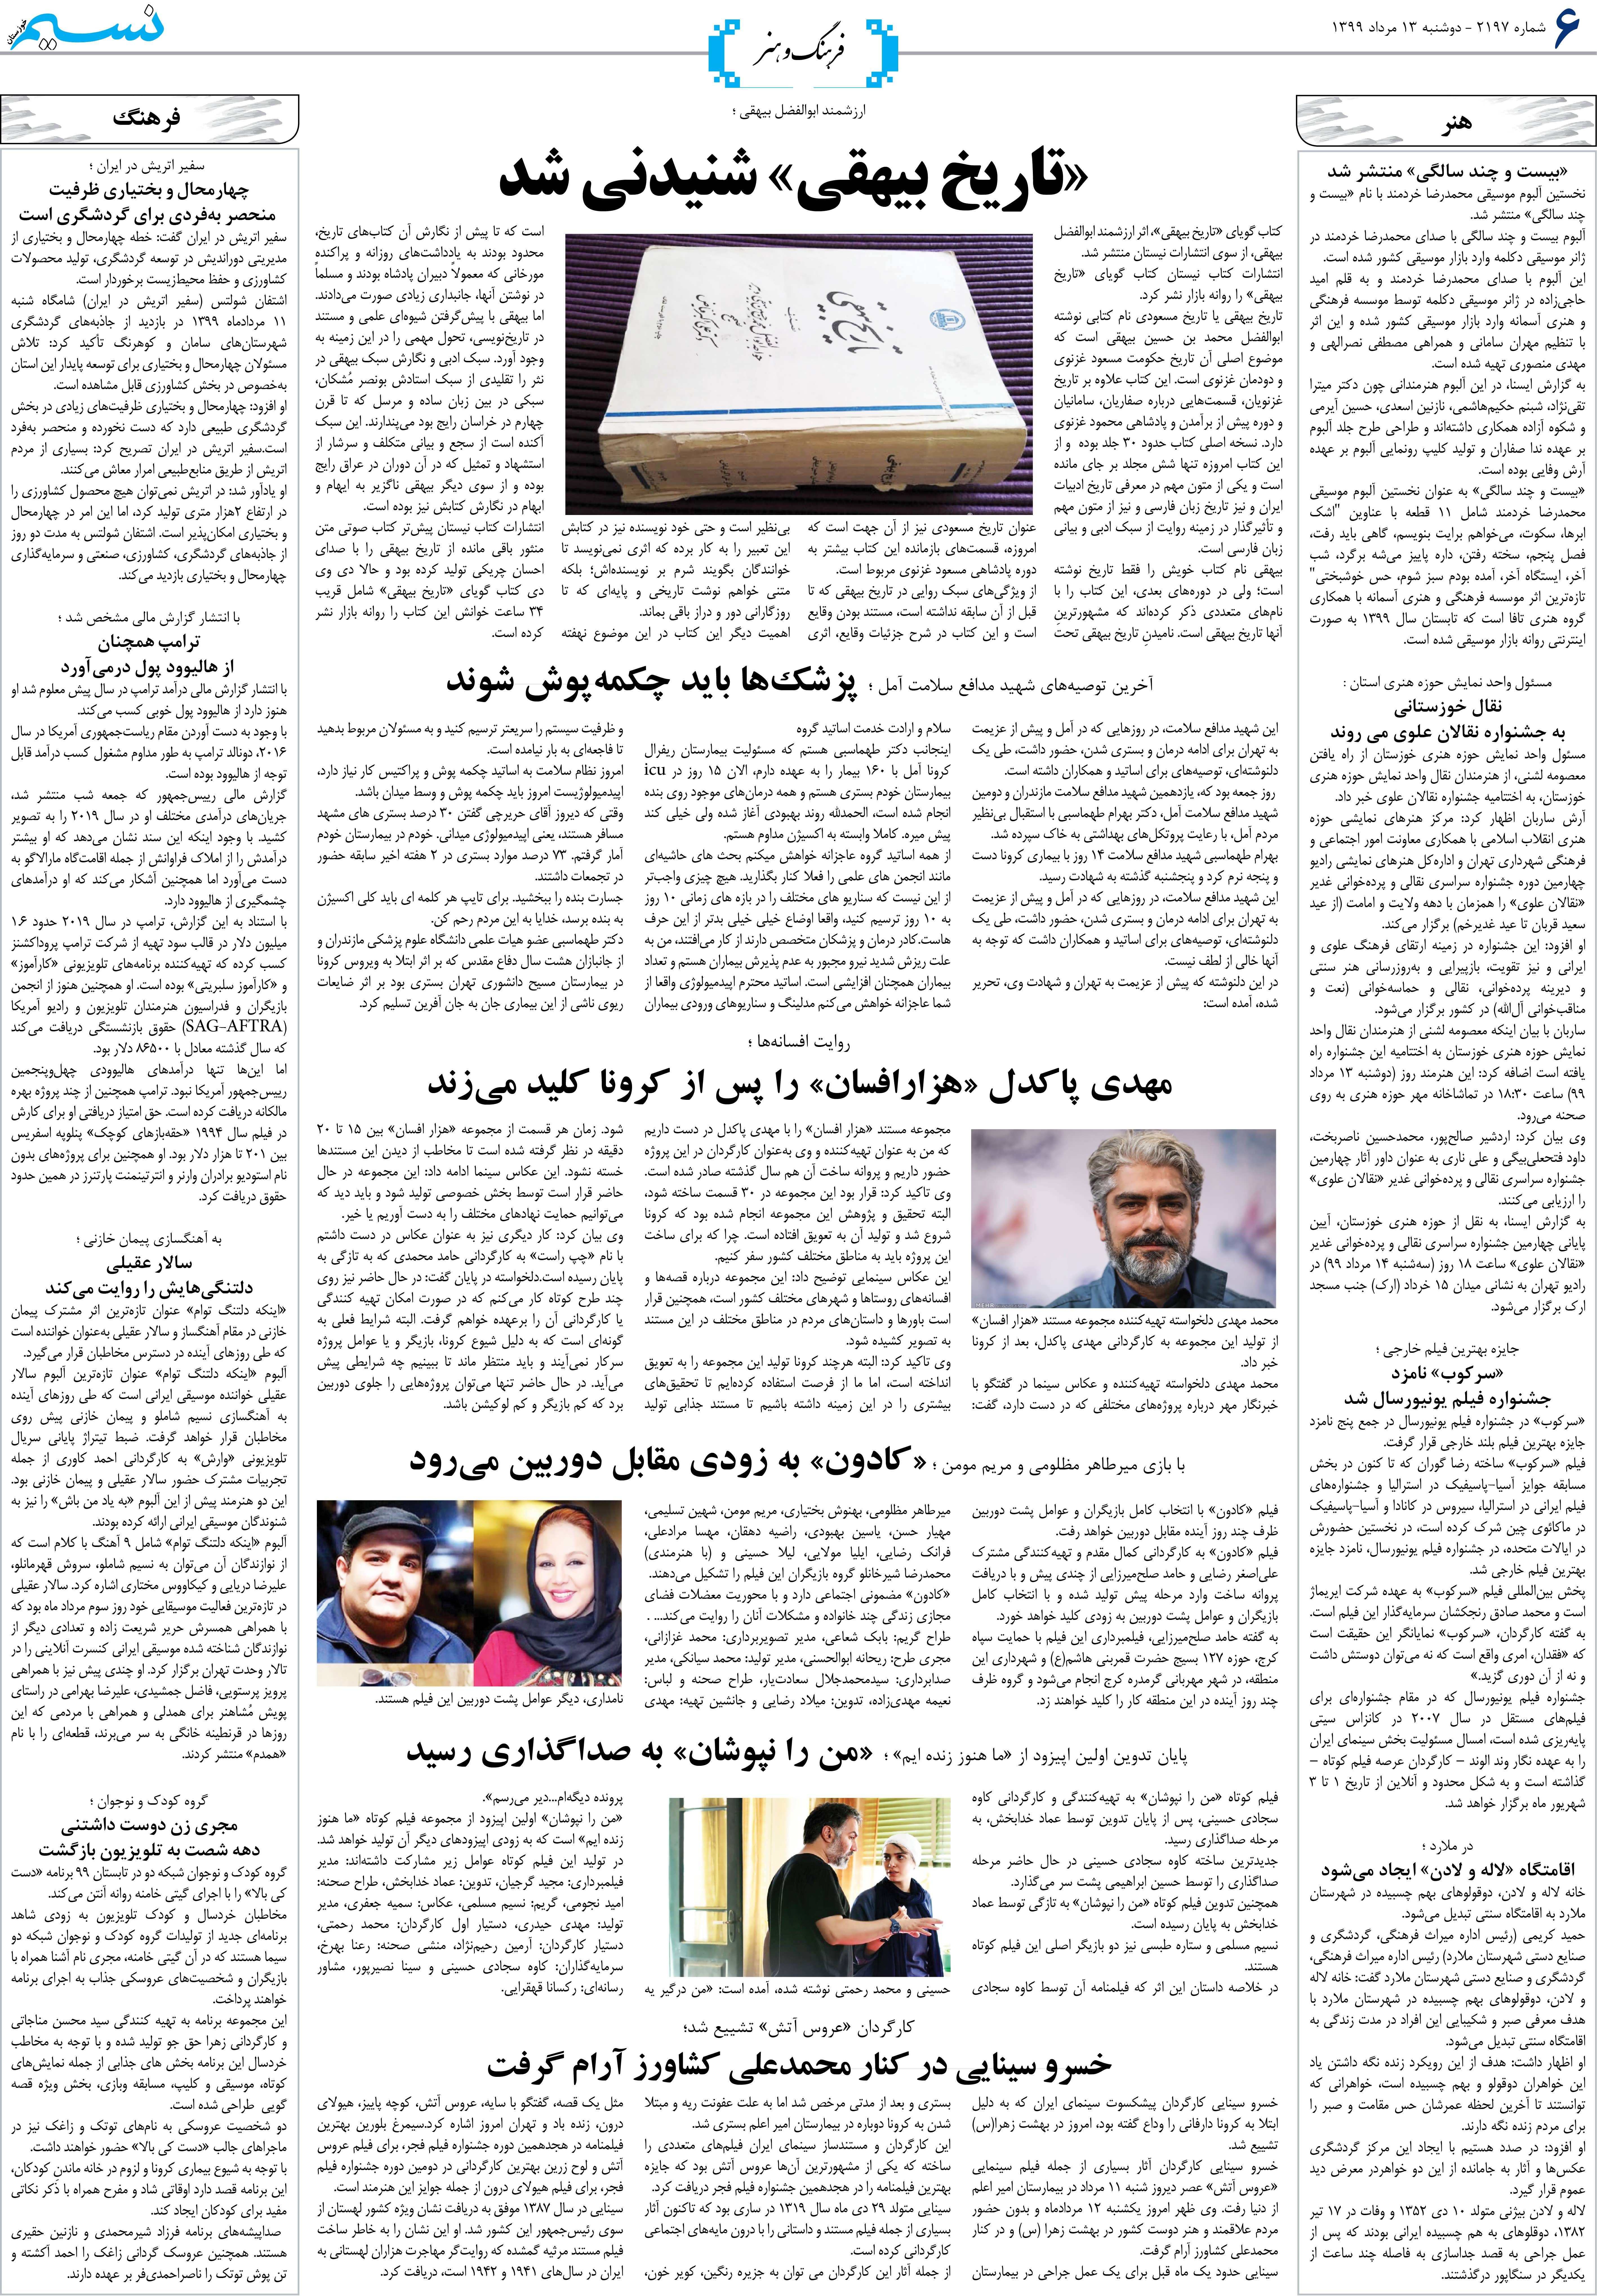 صفحه فرهنگ و هنر روزنامه نسیم شماره 2197